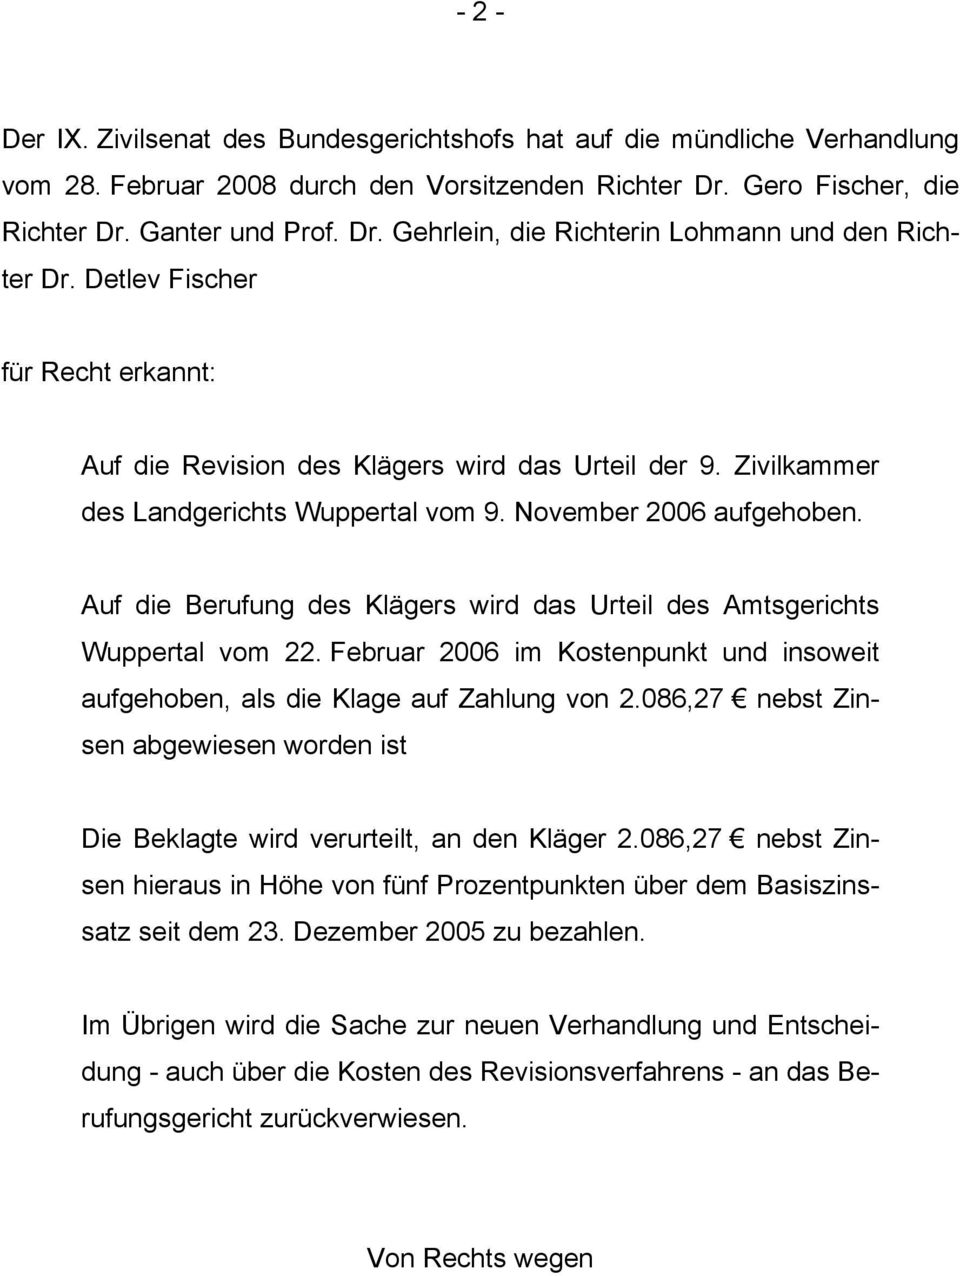 Auf die Berufung des Klägers wird das Urteil des Amtsgerichts Wuppertal vom 22. Februar 2006 im Kostenpunkt und insoweit aufgehoben, als die Klage auf Zahlung von 2.